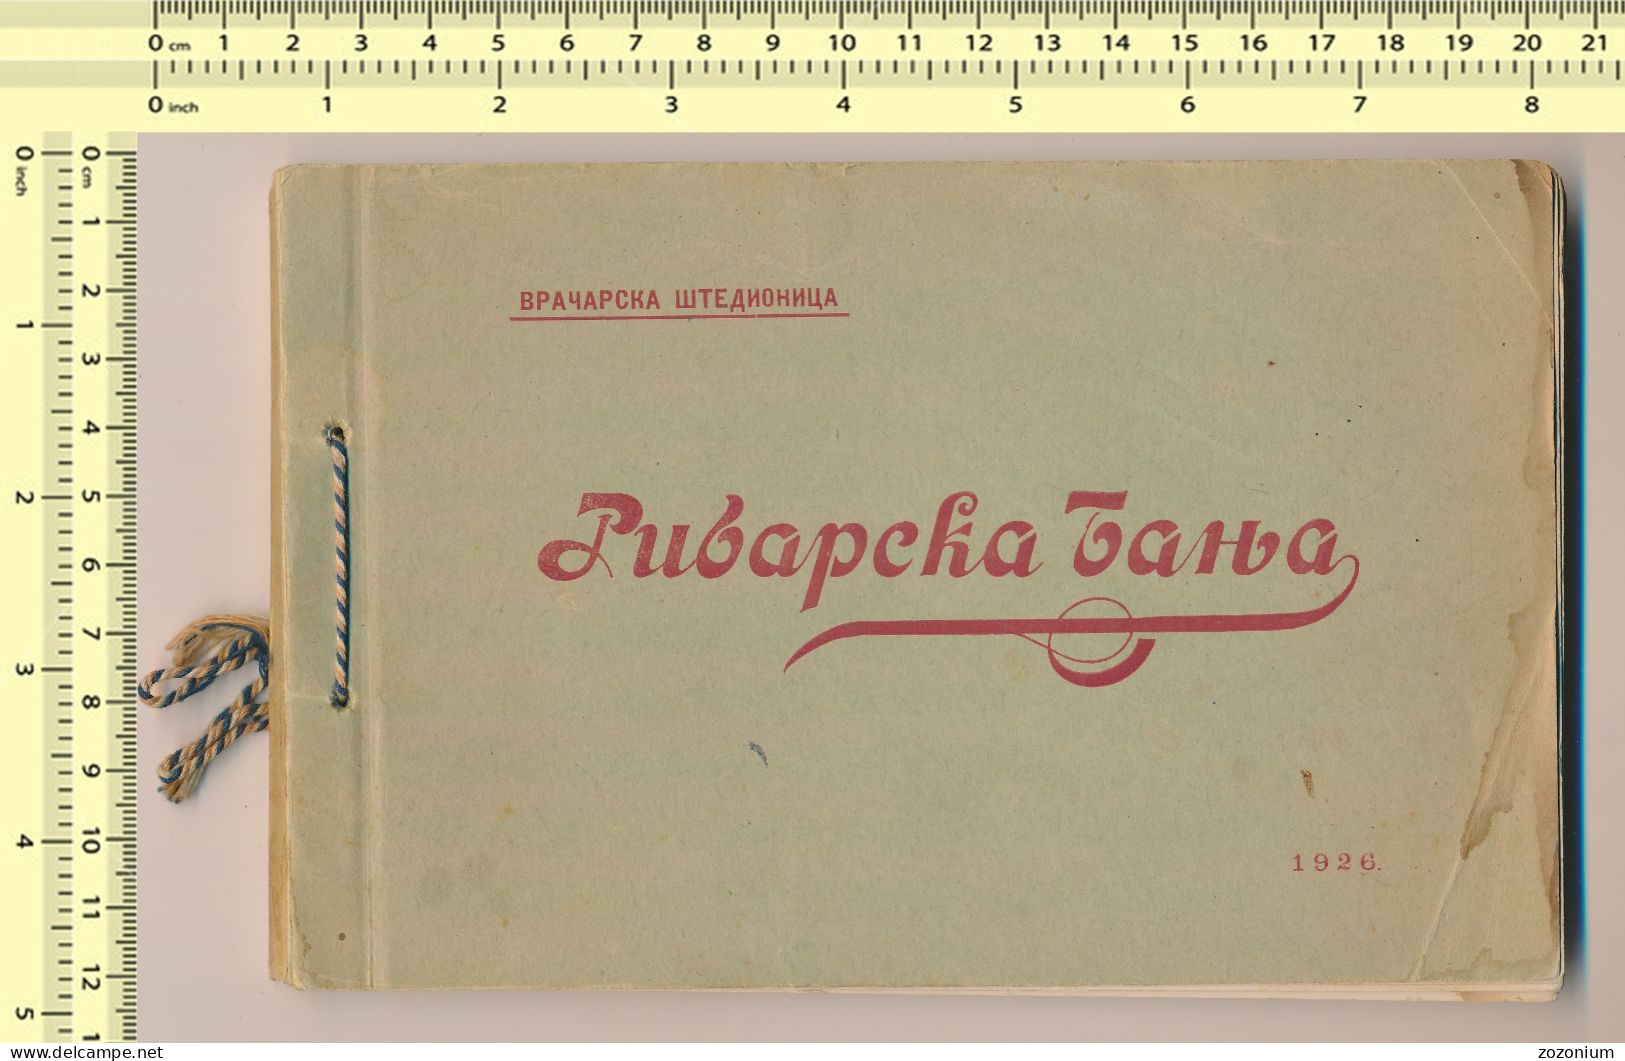 1926 RIBARSKA BANJA Karnet, Booklet With 15 Images 15 Fotografija SRBIJA Old Book - Serbie